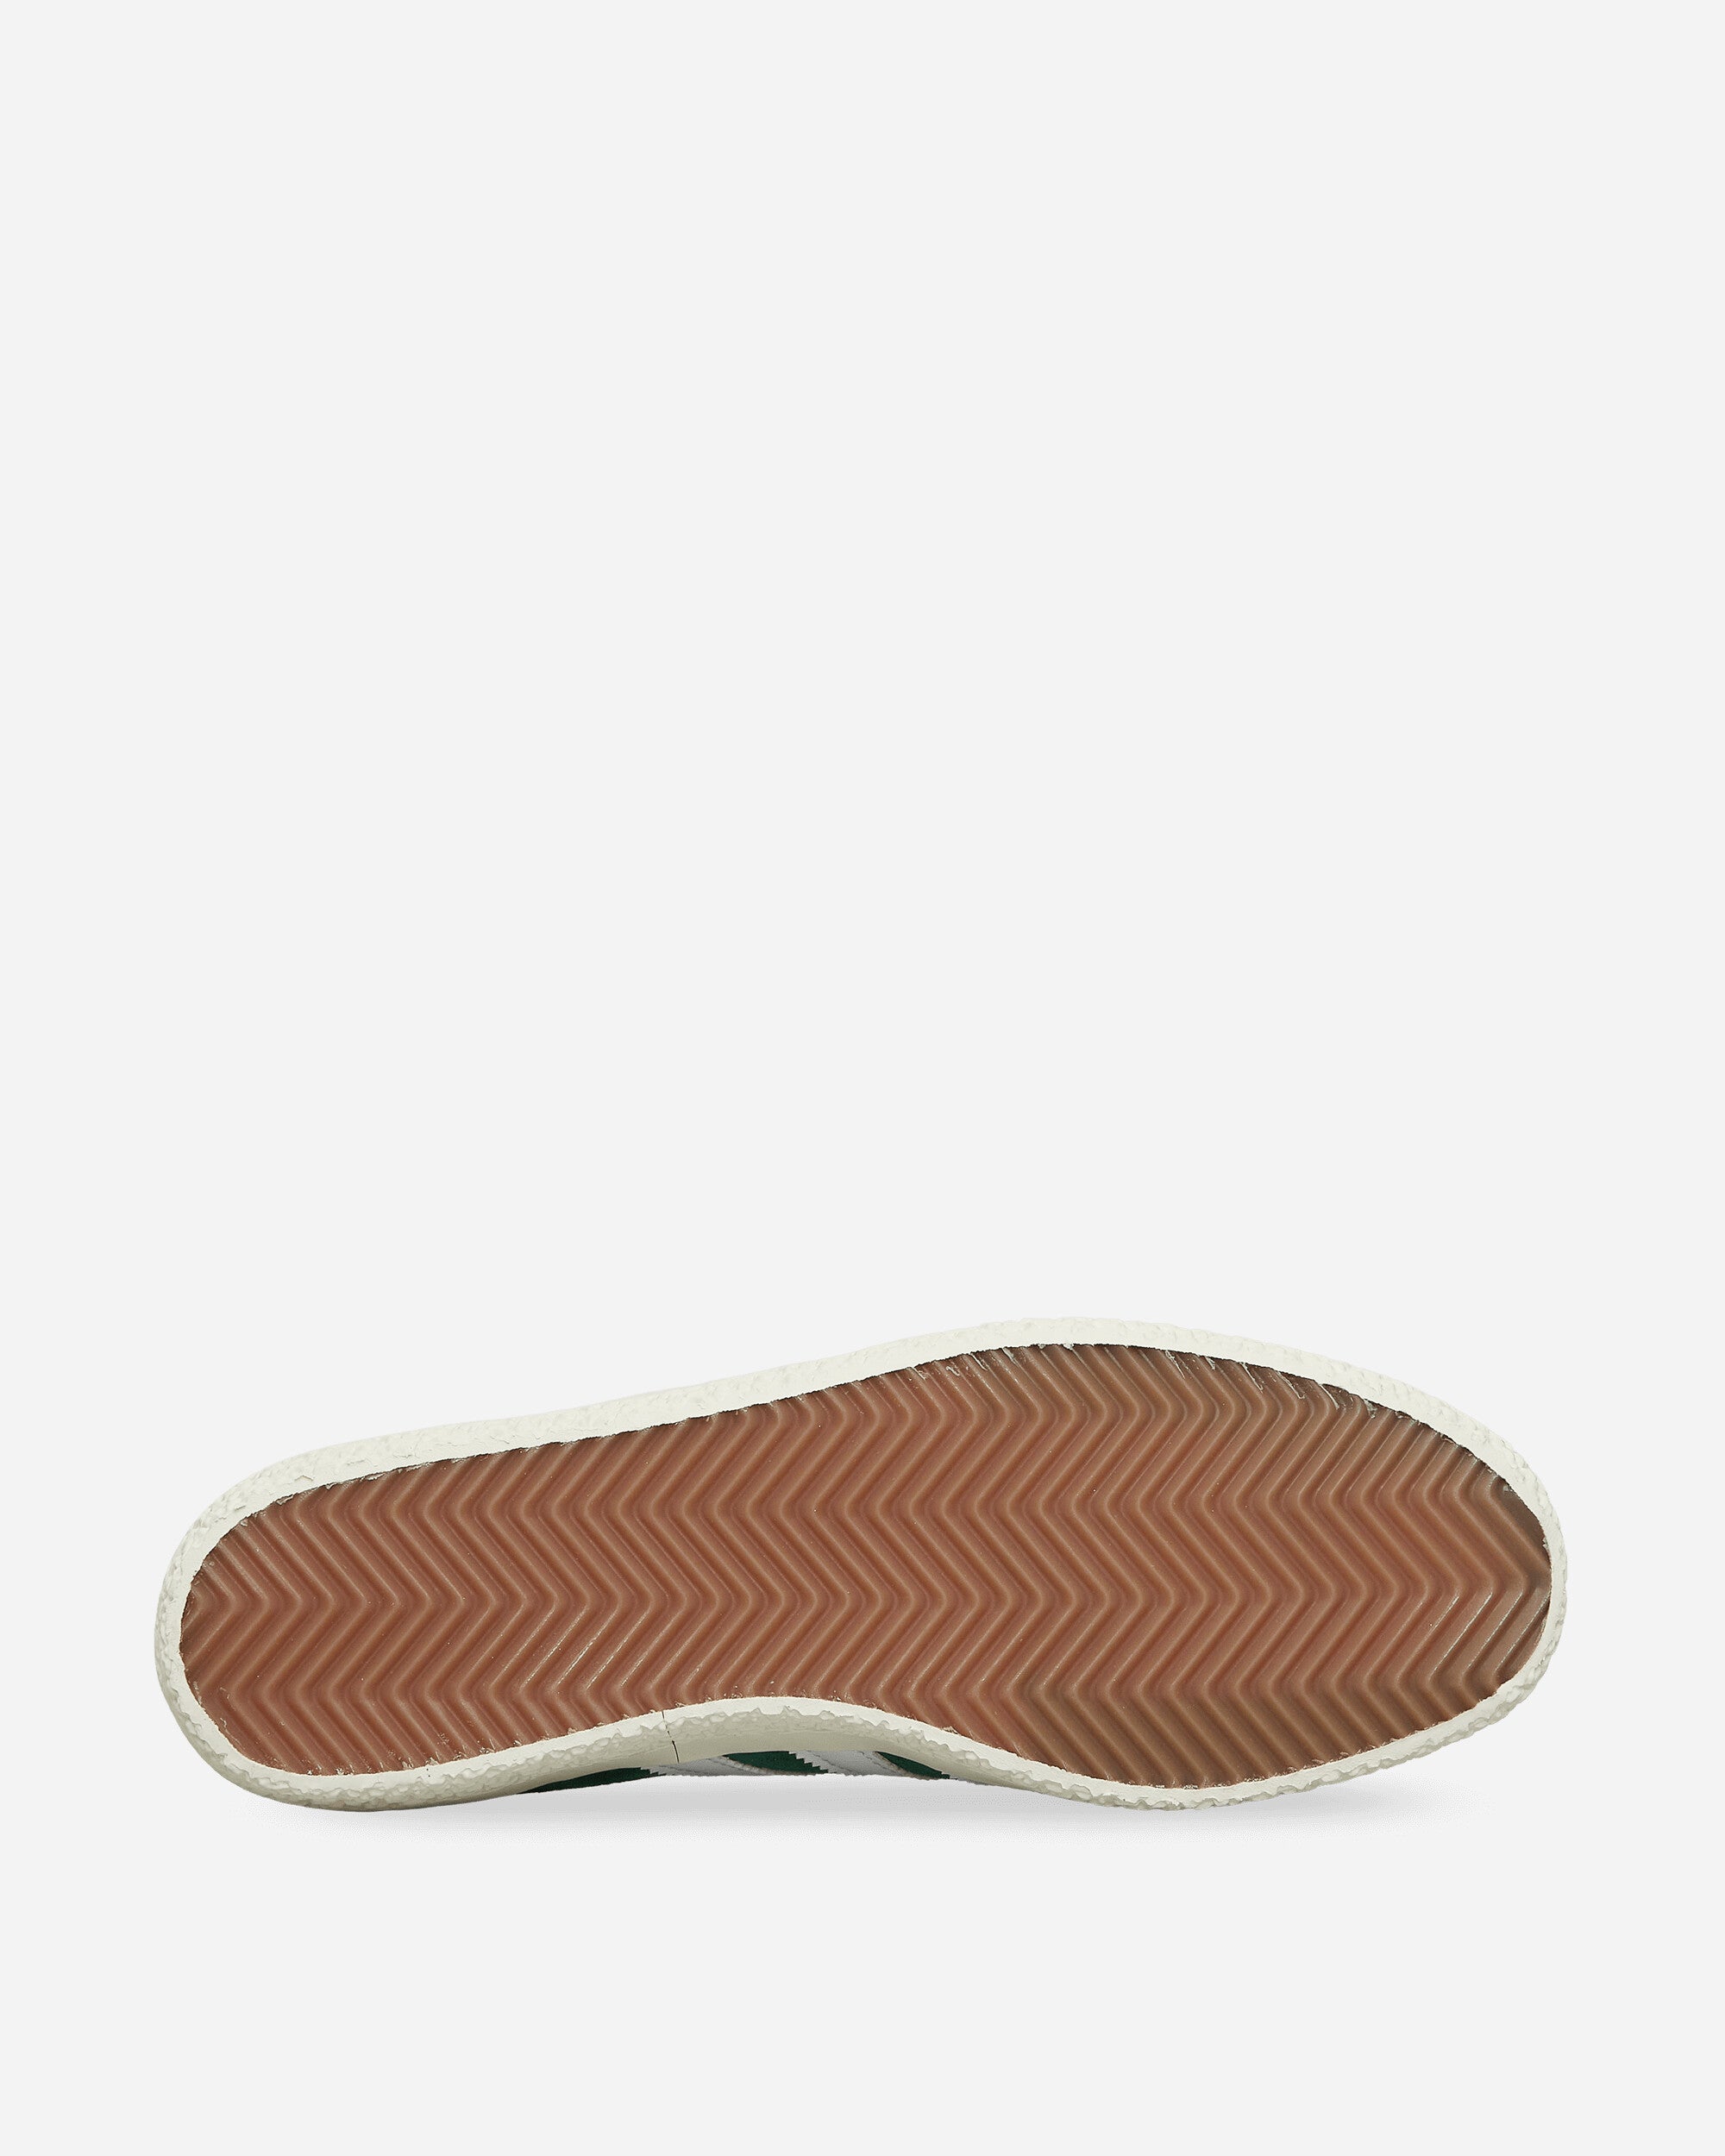 adidas Gazelle Spzl Drkgrn/Ftwwht/Owhite Sneakers Low IF5787 001